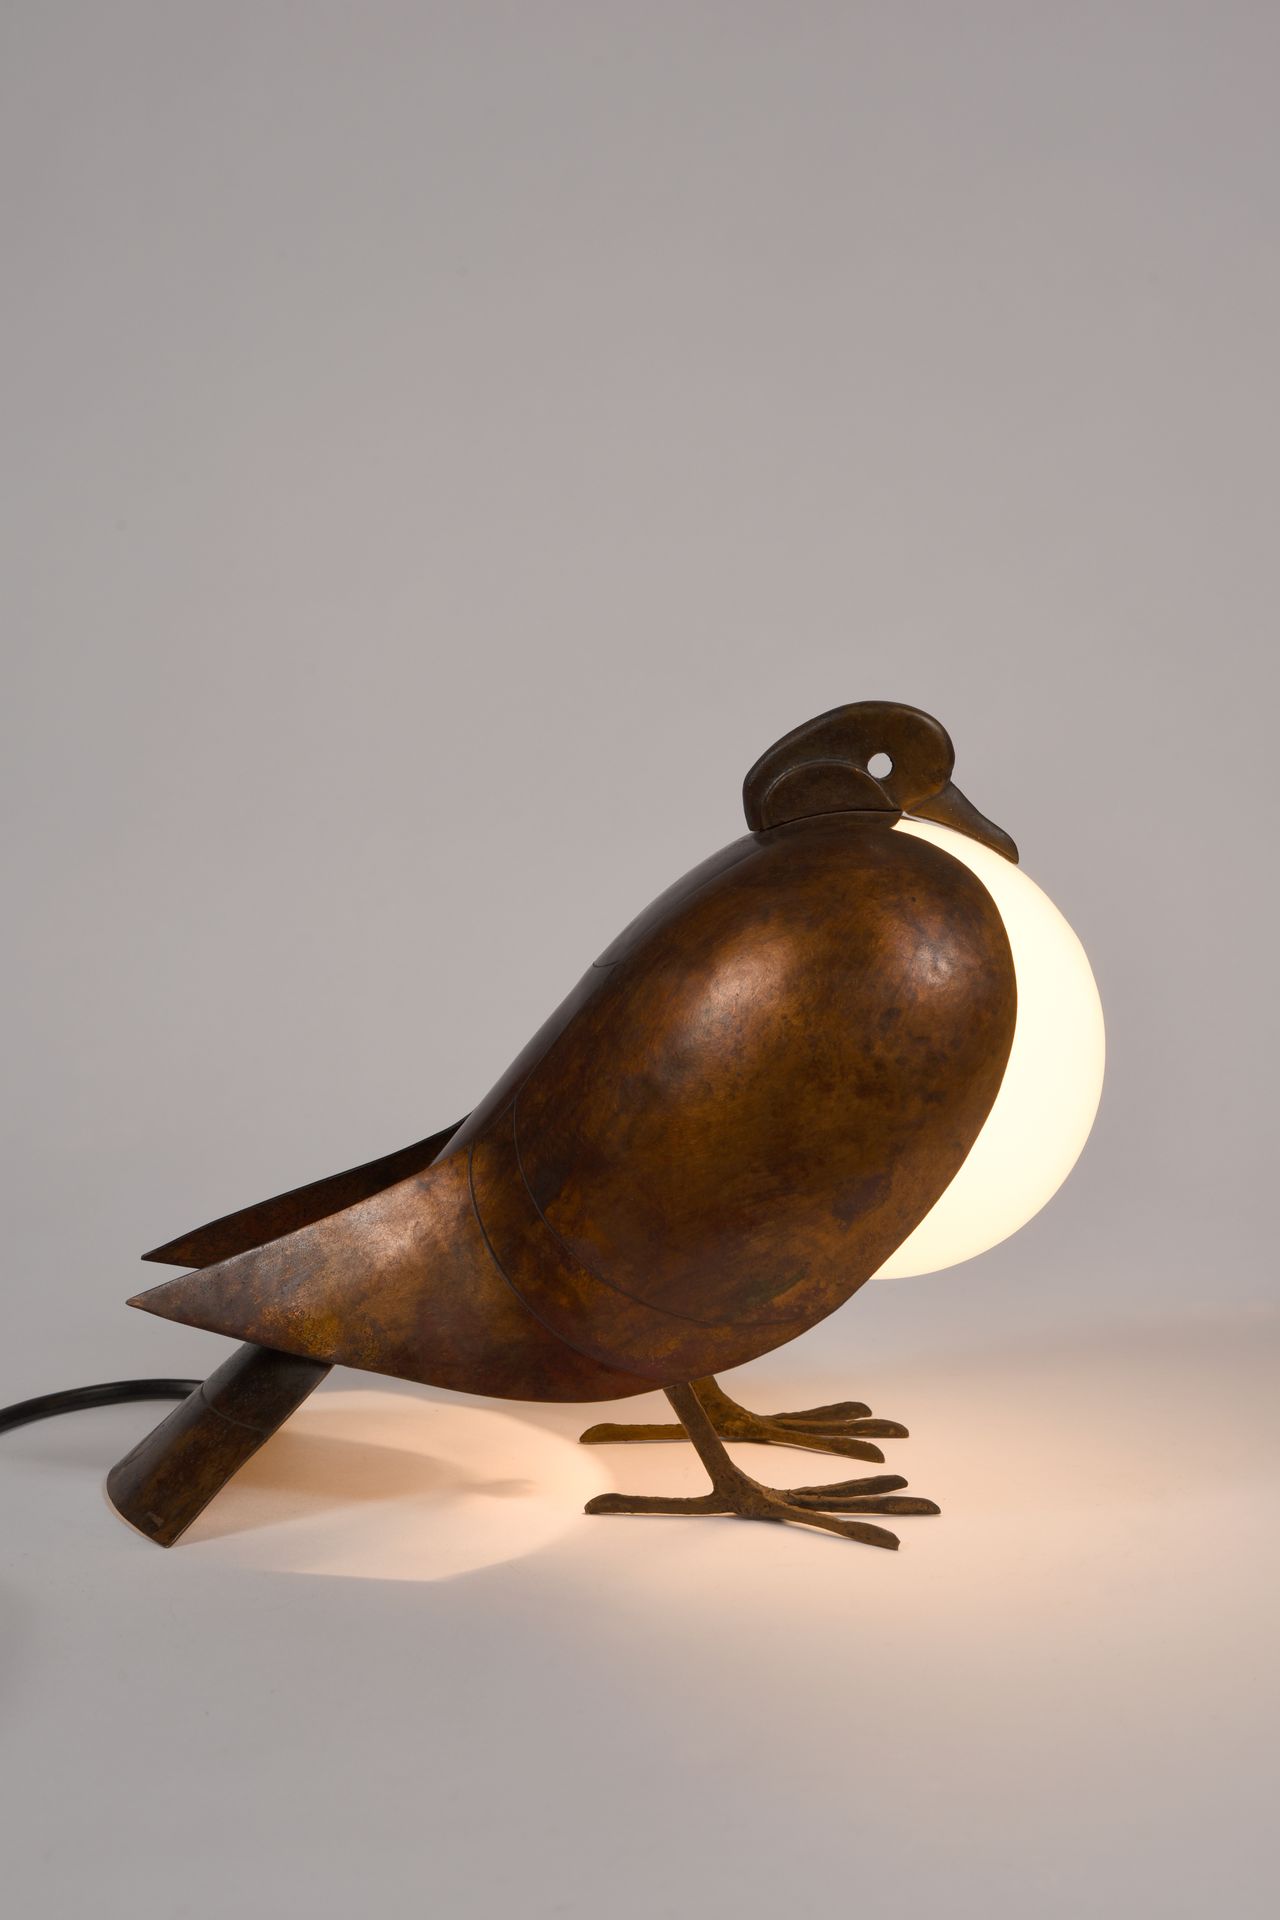 Null 弗朗索瓦-哈维尔-拉兰内 (1927-2008)

台灯 "鸽子"，1992年

抛光铜主体和乳白色玻璃反射器

由巴黎Artcurial出版社出版
&hellip;